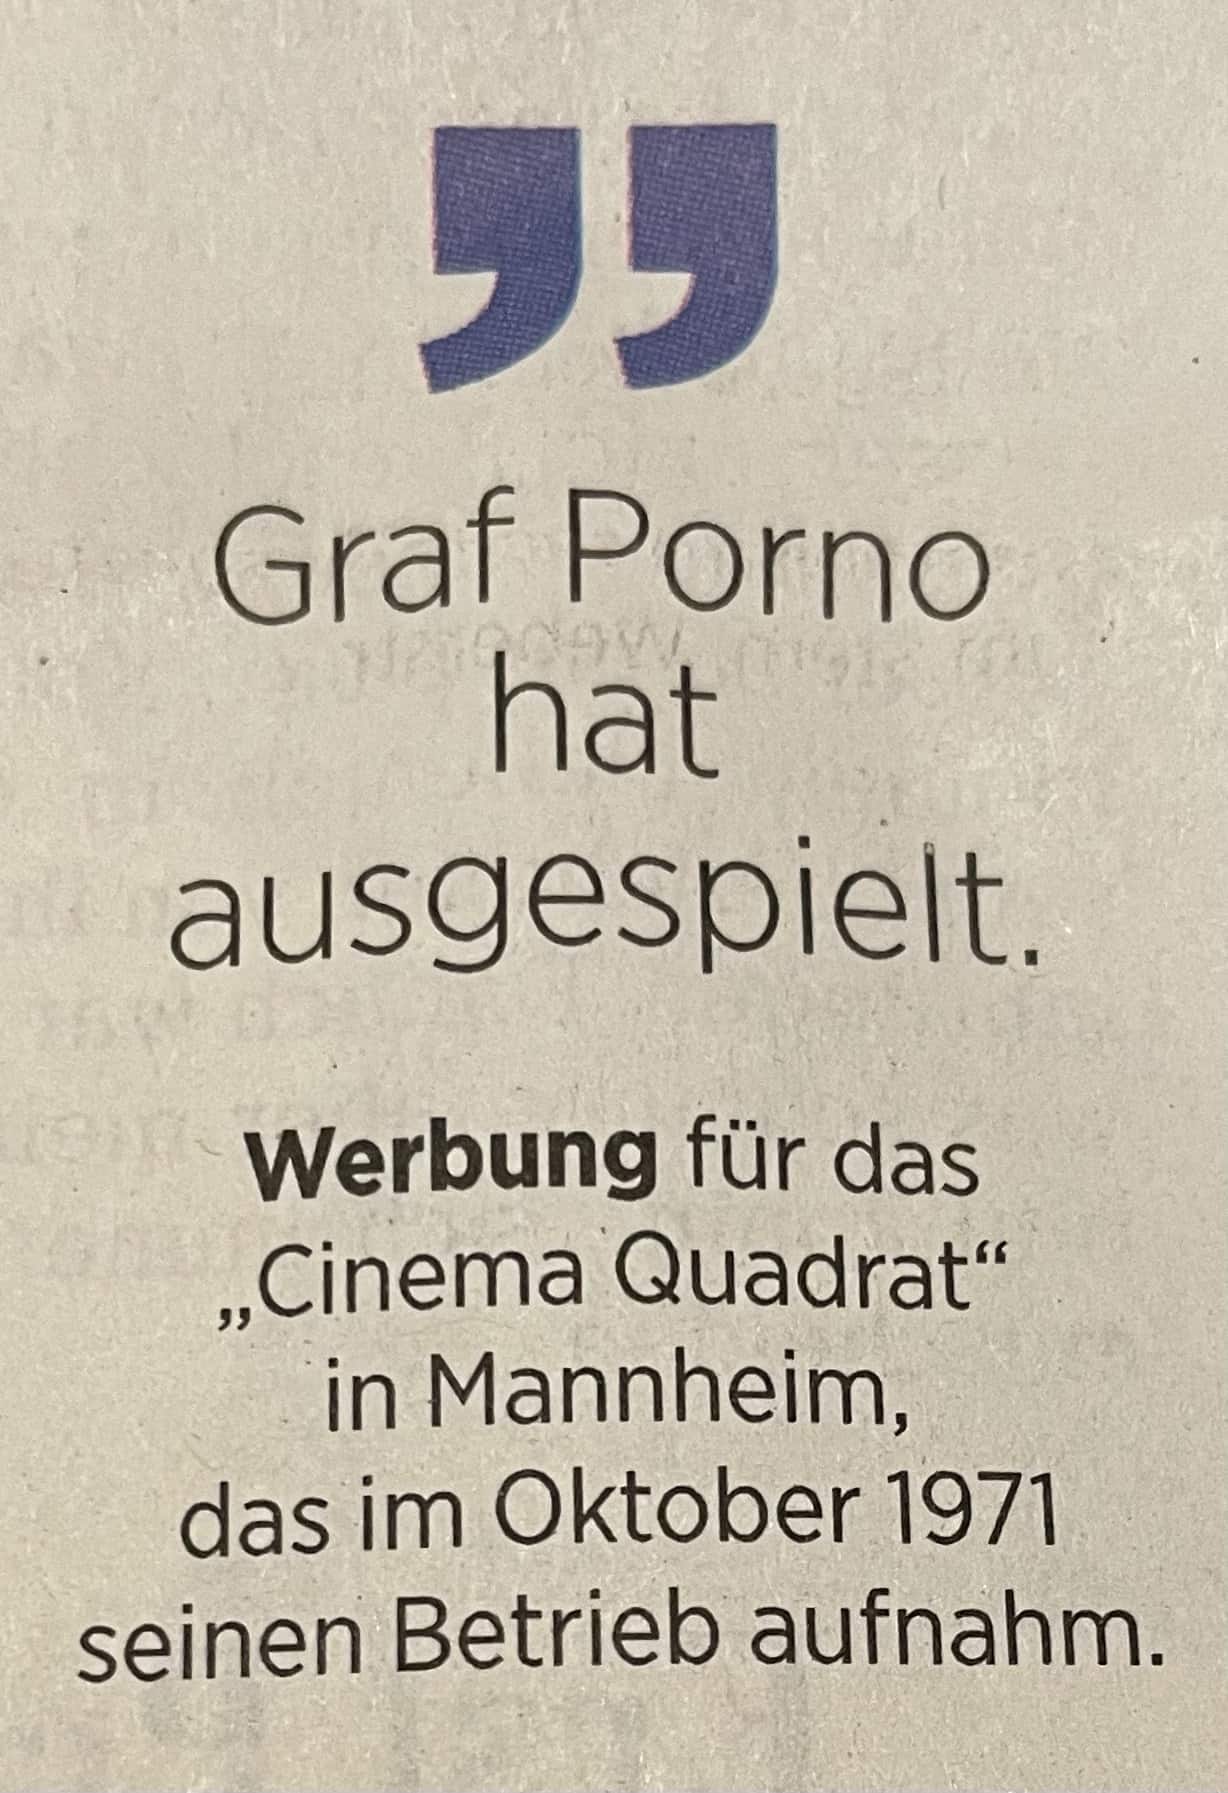 Werbung für das Cinema Quadrat in Mannheim 1971